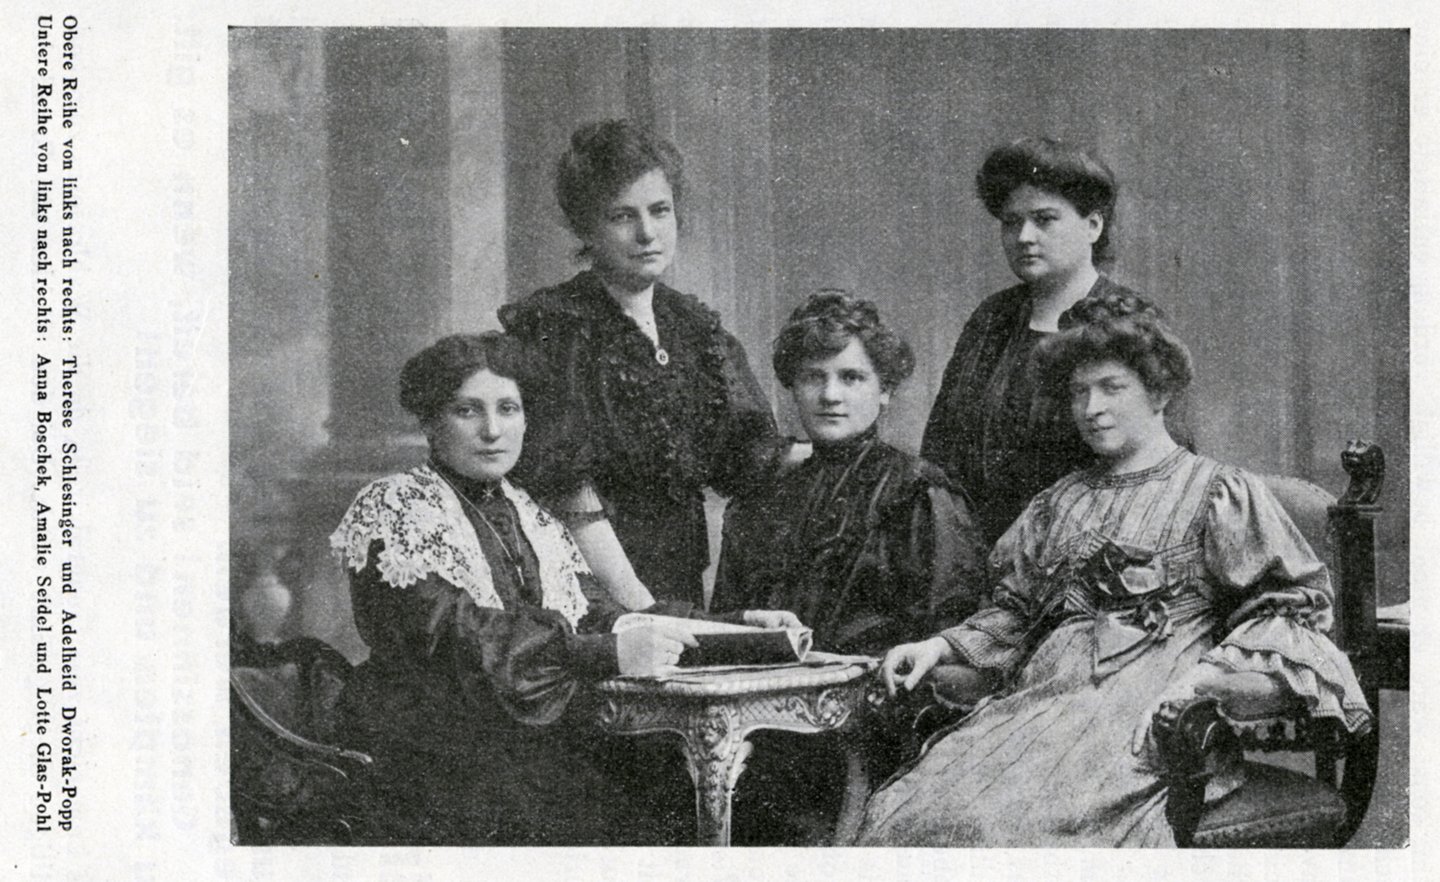 Fünf starke Frauen im Jahr 1904: Obere Reihe vl. Therese Schlesinger und Adelheid Popp; Untere Reihe vl. Anna Boschek, Amalie Seidel und Lotte Glas-Pohl